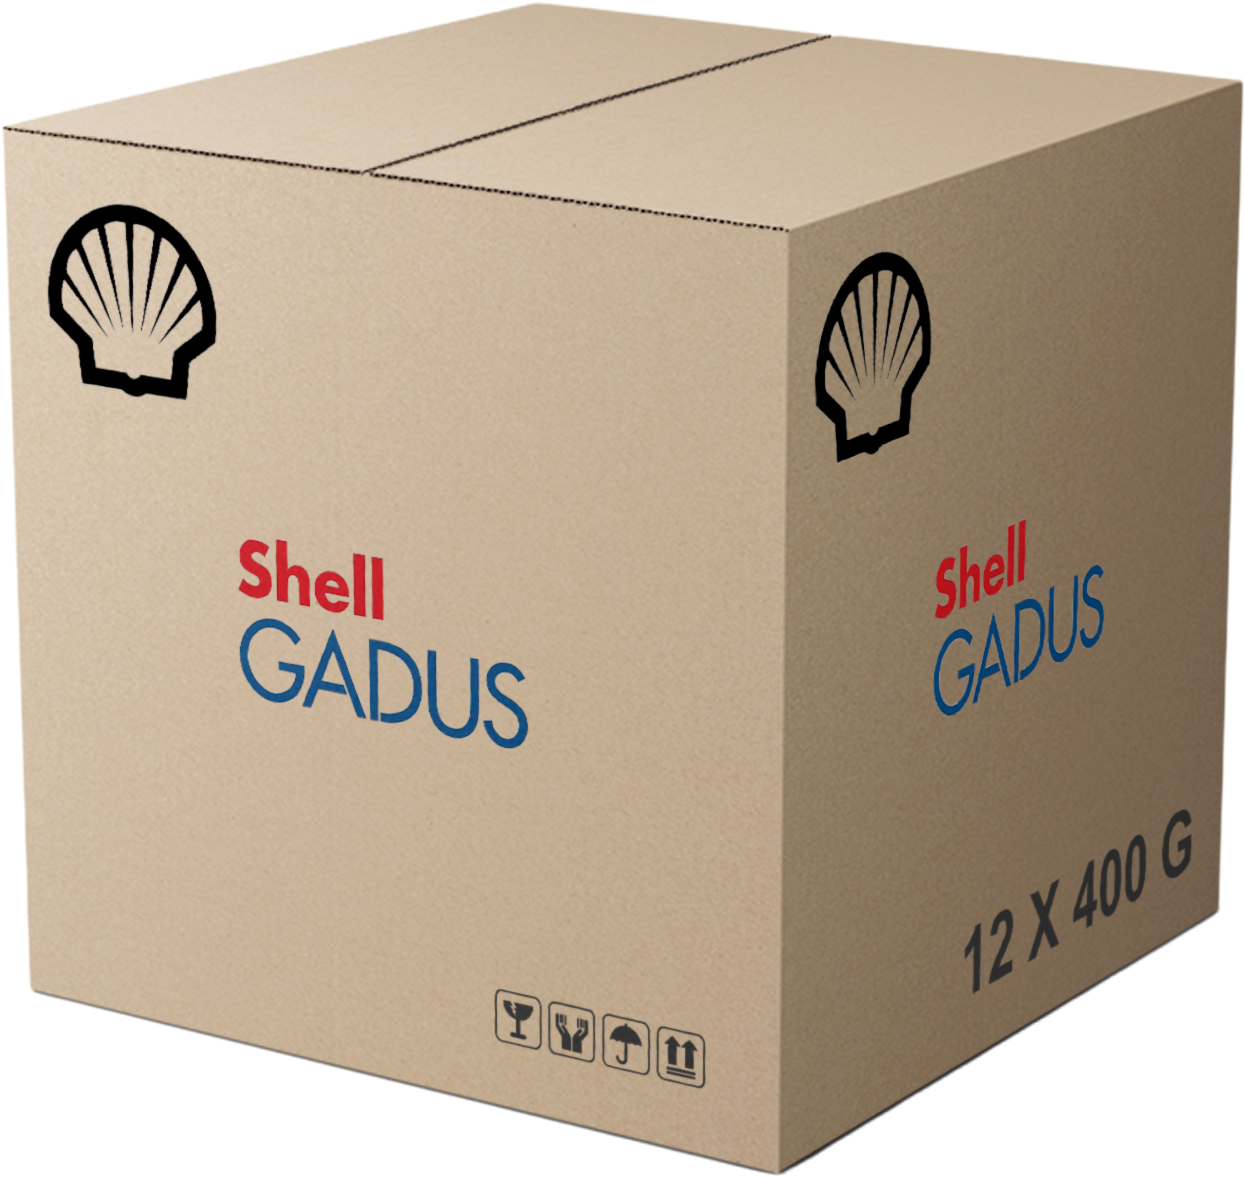 Shell Gadus S2 V220 2, 12 x 400 gr